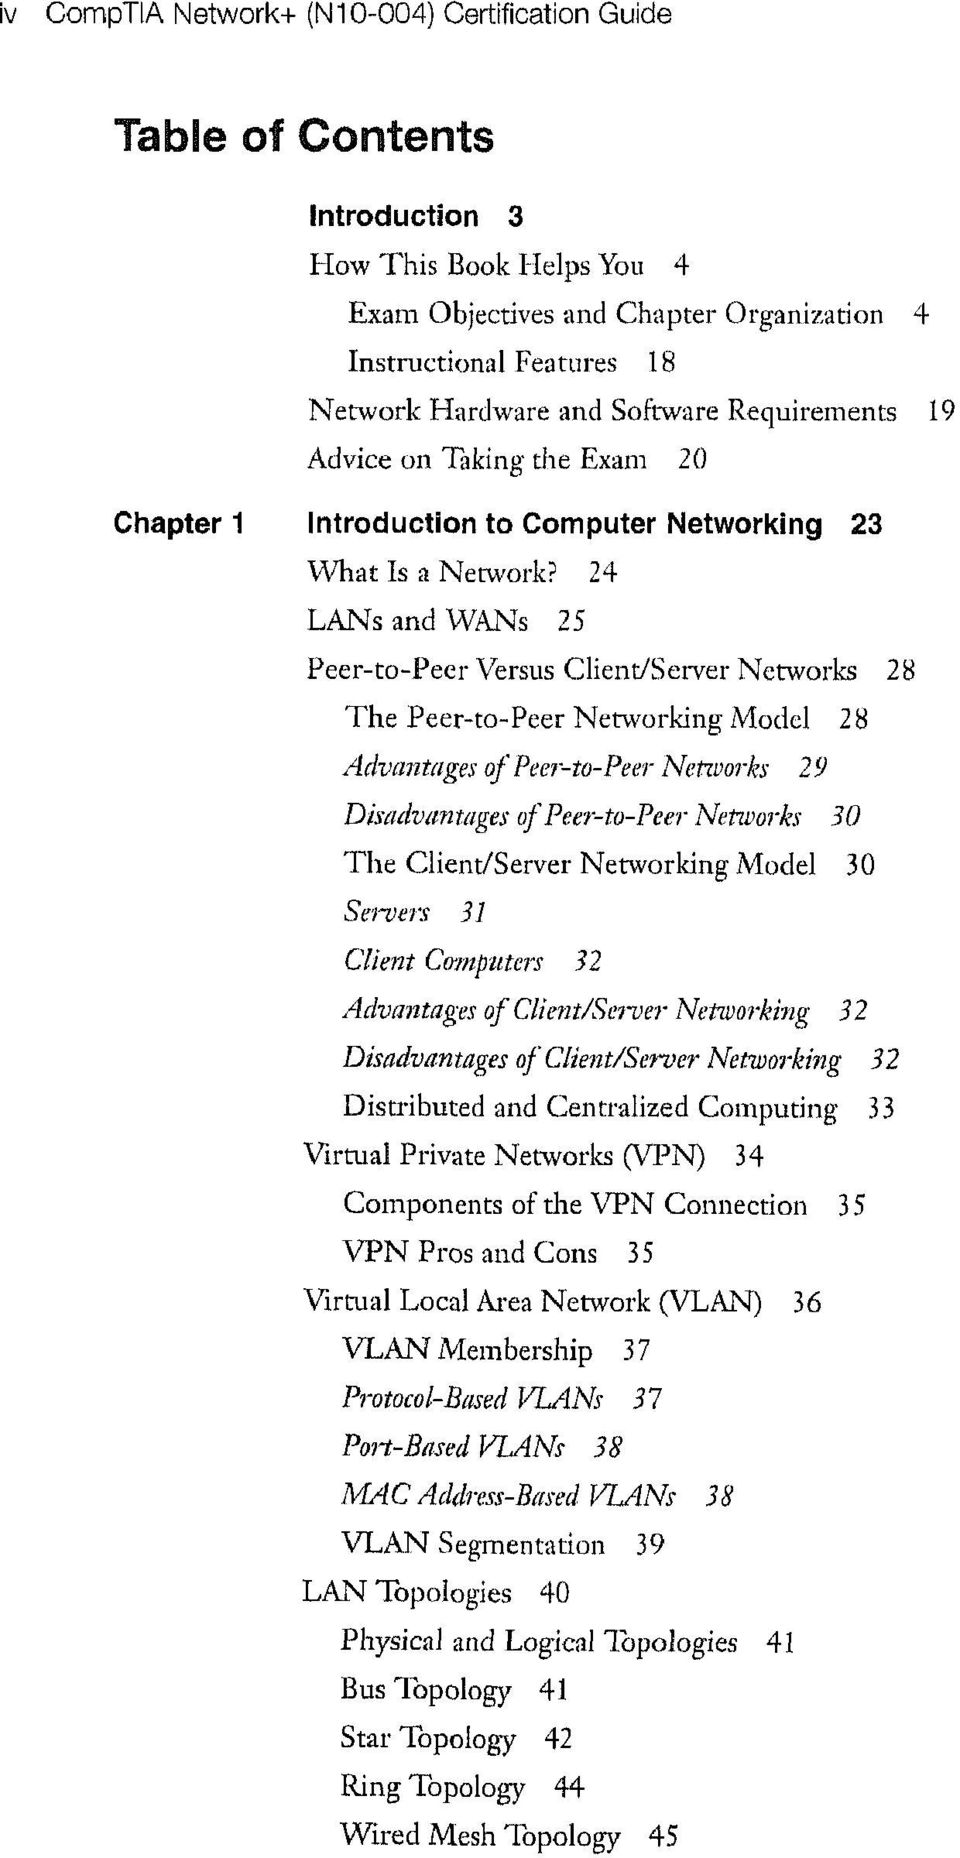 24 LANs and WANs 25 Peer-to-Peer Versus Client/Server Networks 28 The Peer-to-Peer Networking Model 28 Advantages of Peer-to-Peer Networks 29 Disadvantages of Peer-to-Peer Networks 30 The